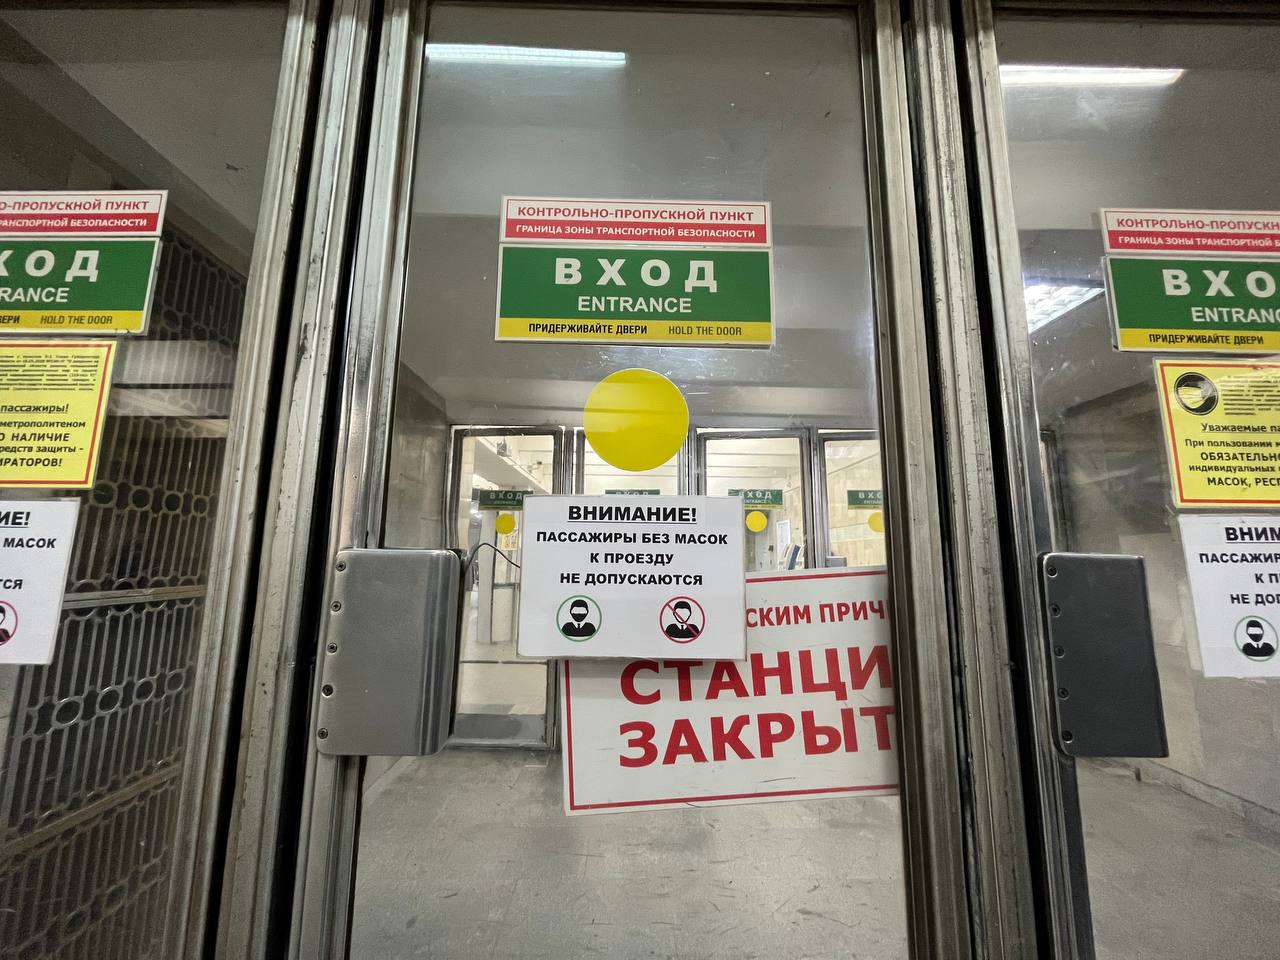 В Екатеринбурге закрыли станцию метро. Объясняем, что произошло